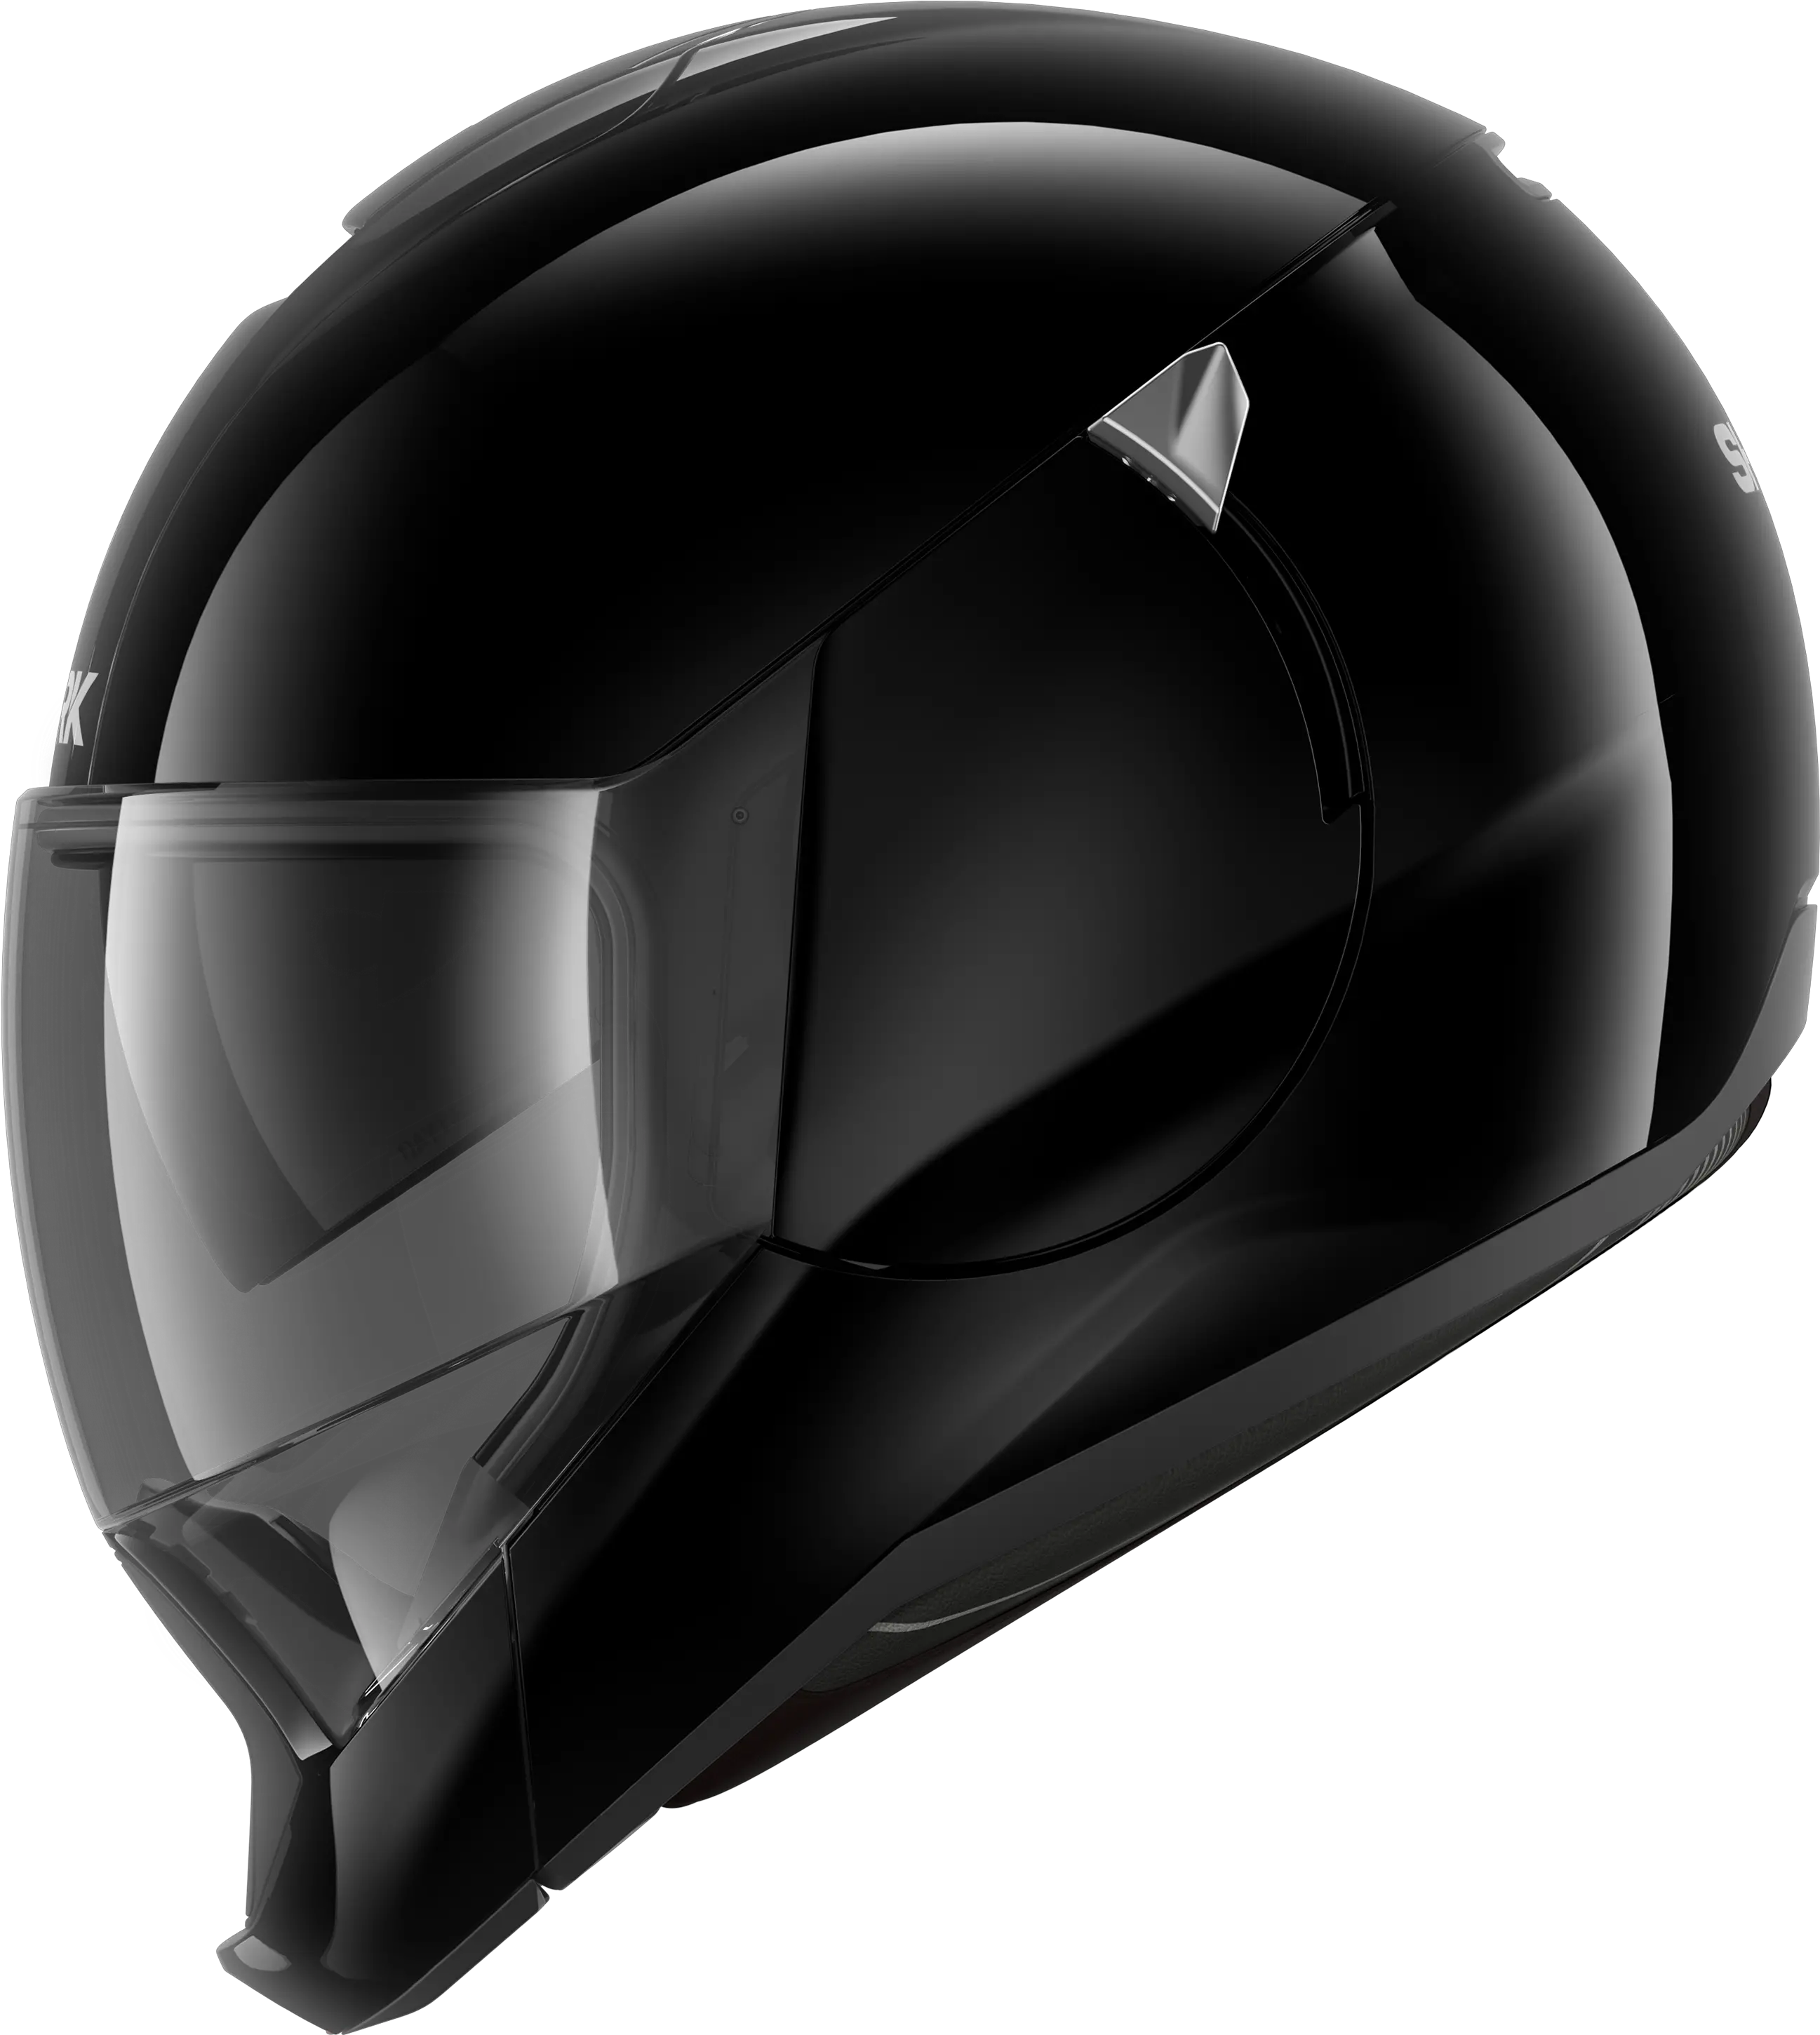 St5fn Kart Cmr Full Face Helmet Black Stilo St5 Zero Png Vietnam Helmet Png